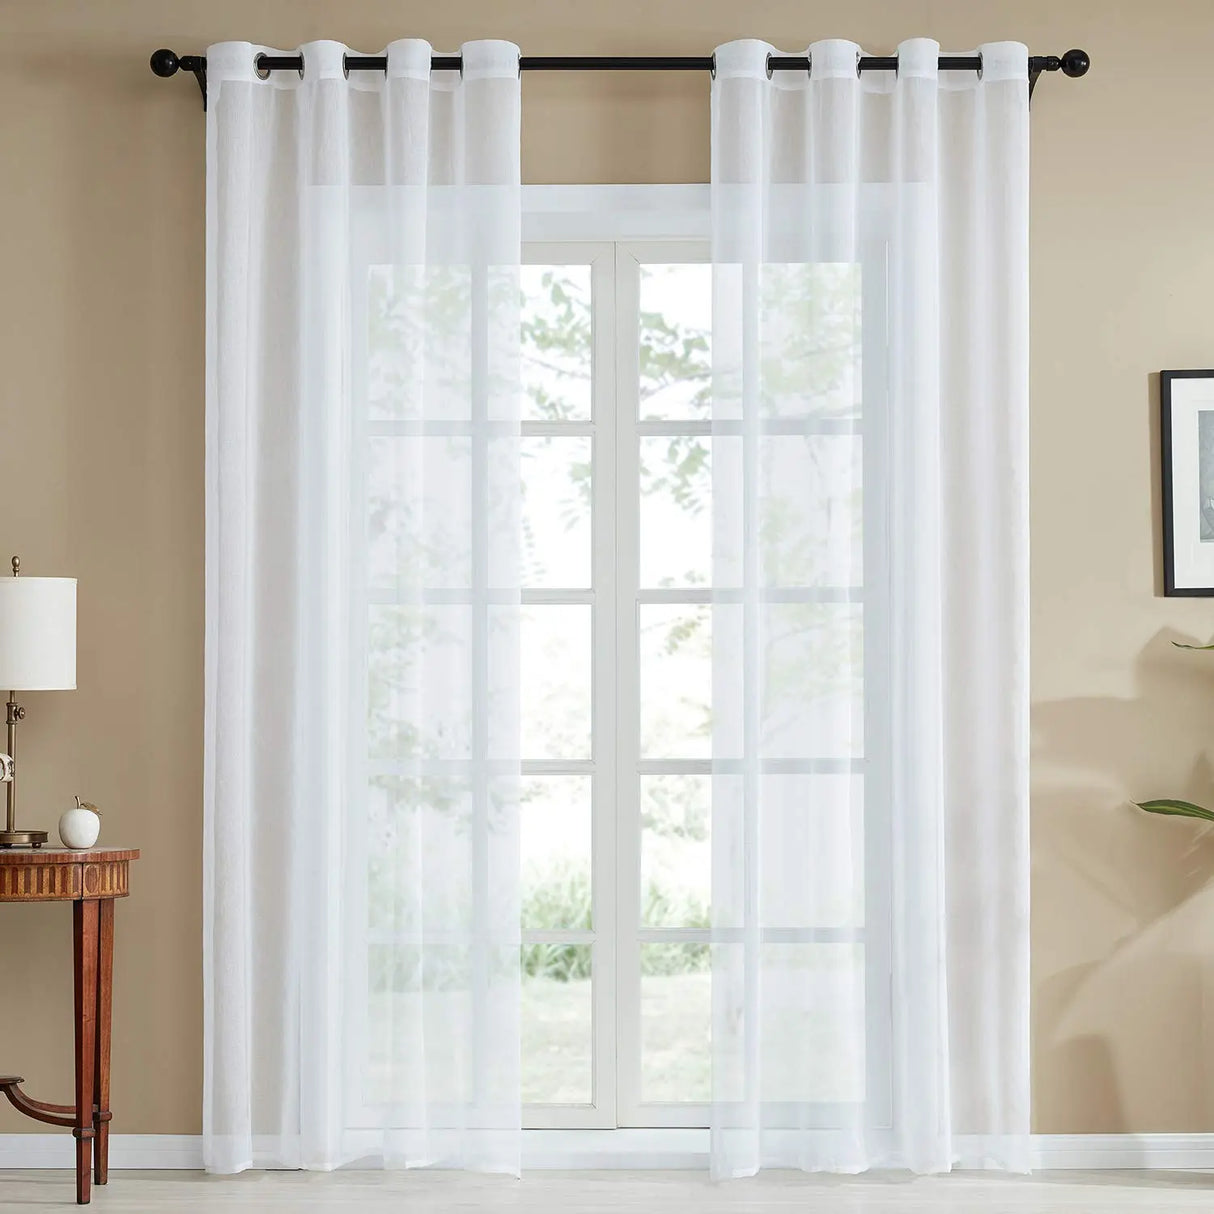 Topfinel Plain Voile Sheer Curtain for Elegant Home Decor